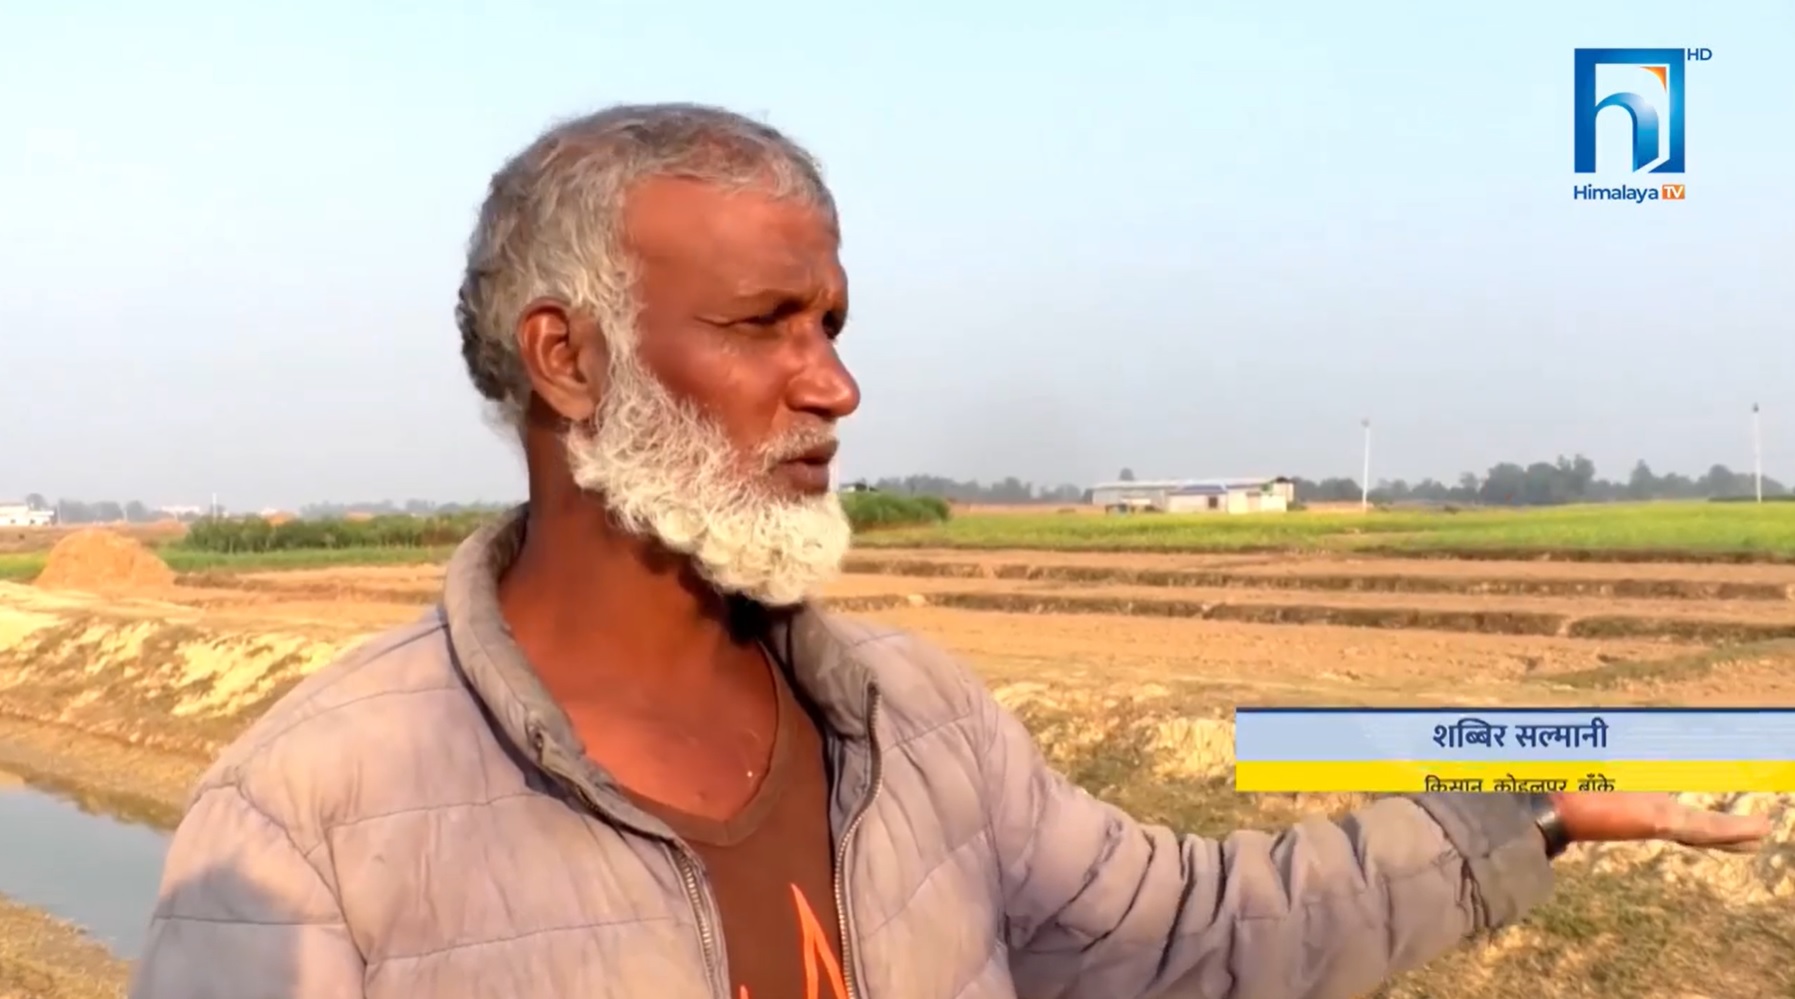 सिक्टा सिंचाई आयोजनाबाट खेतमा पानी पुग्दा बाँकेका किसान उत्साहित (भिडियोसहित)